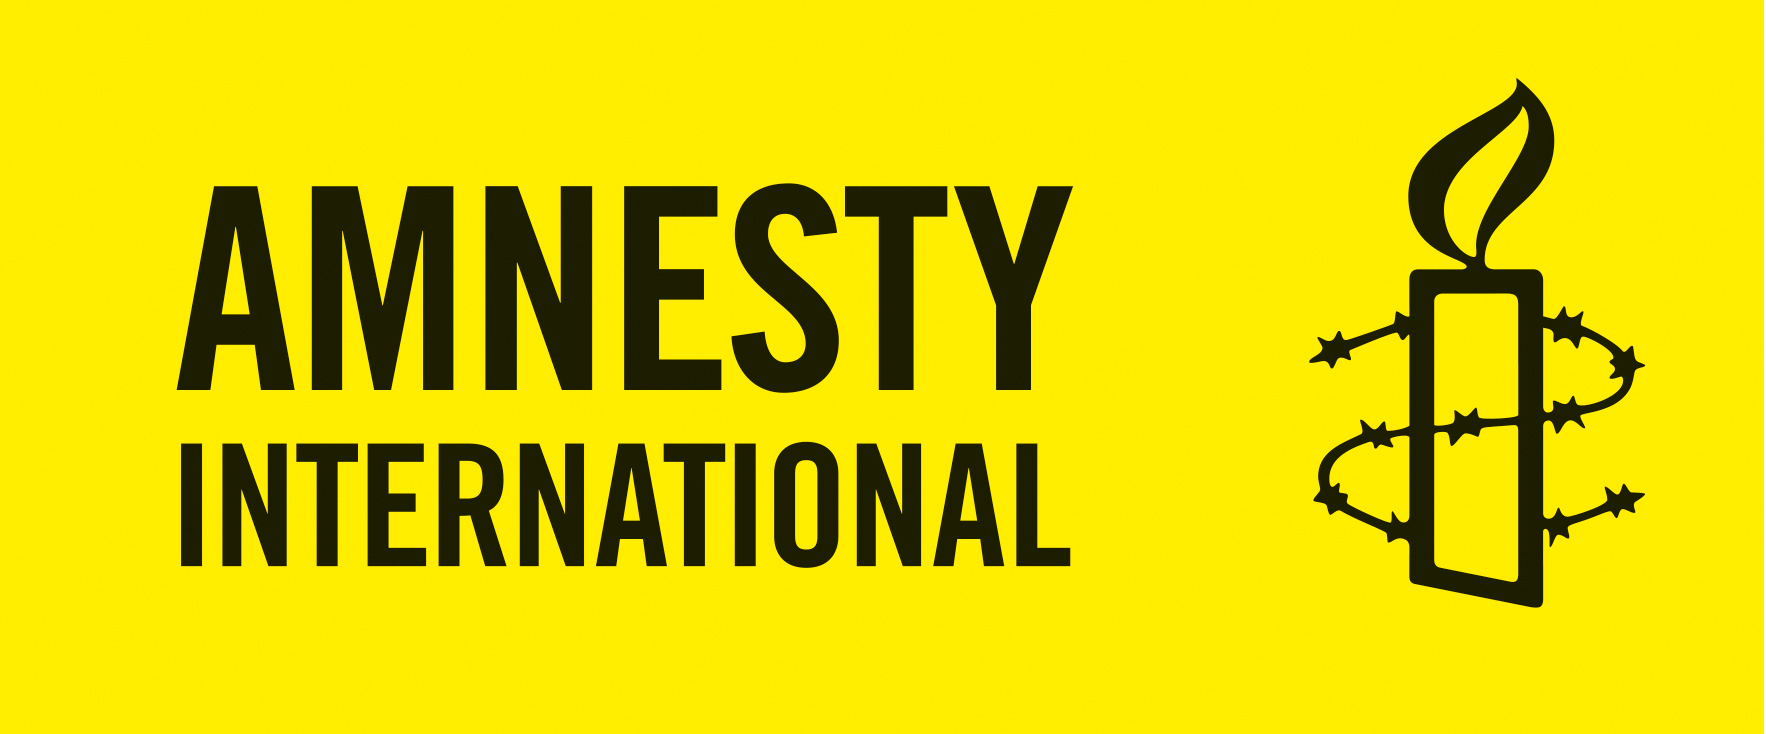 Amnesty tukemassa Pori Pridea